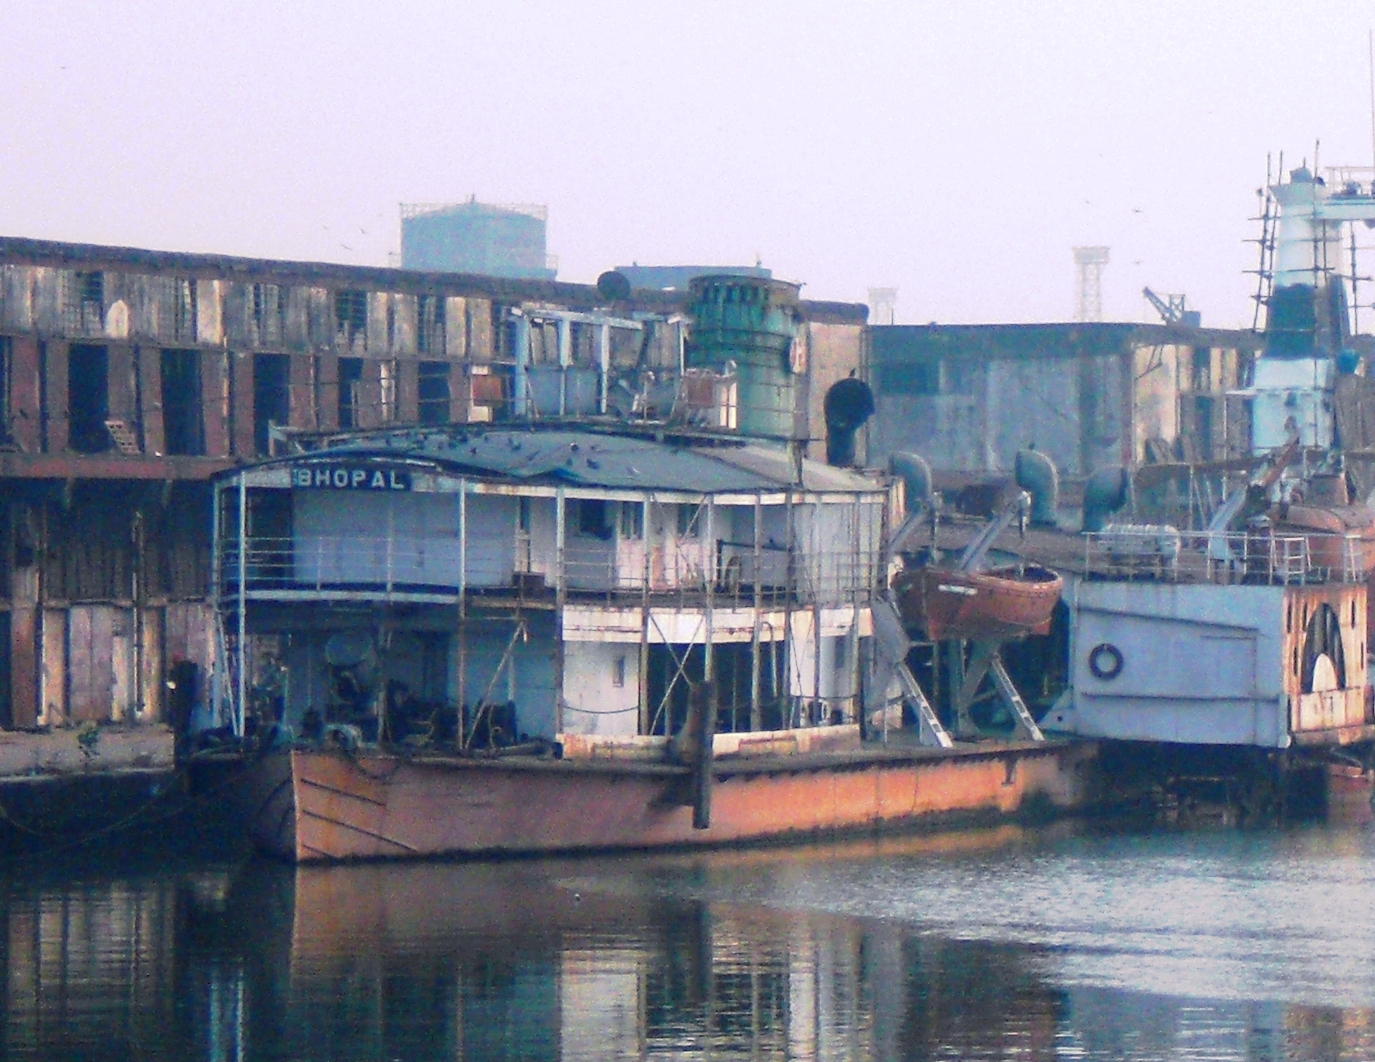 The paddle steamer Bhopal at Kidderpore docks, Kolkata